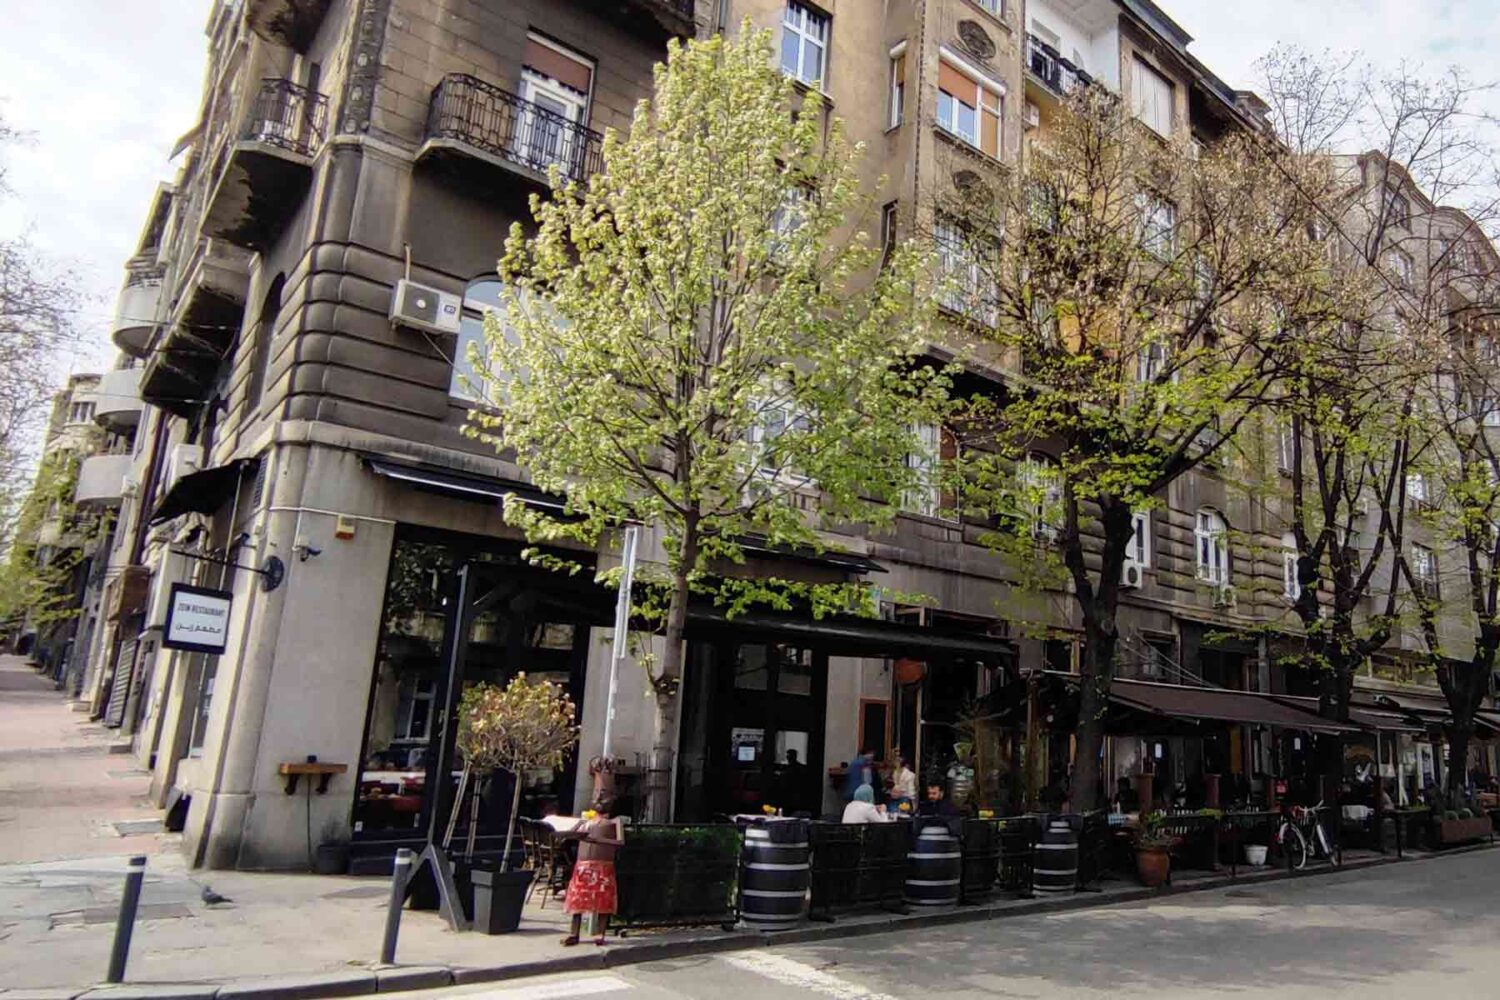 Kafići Beograda - odmor i predah u barovima i kafićima je način života Beograđana